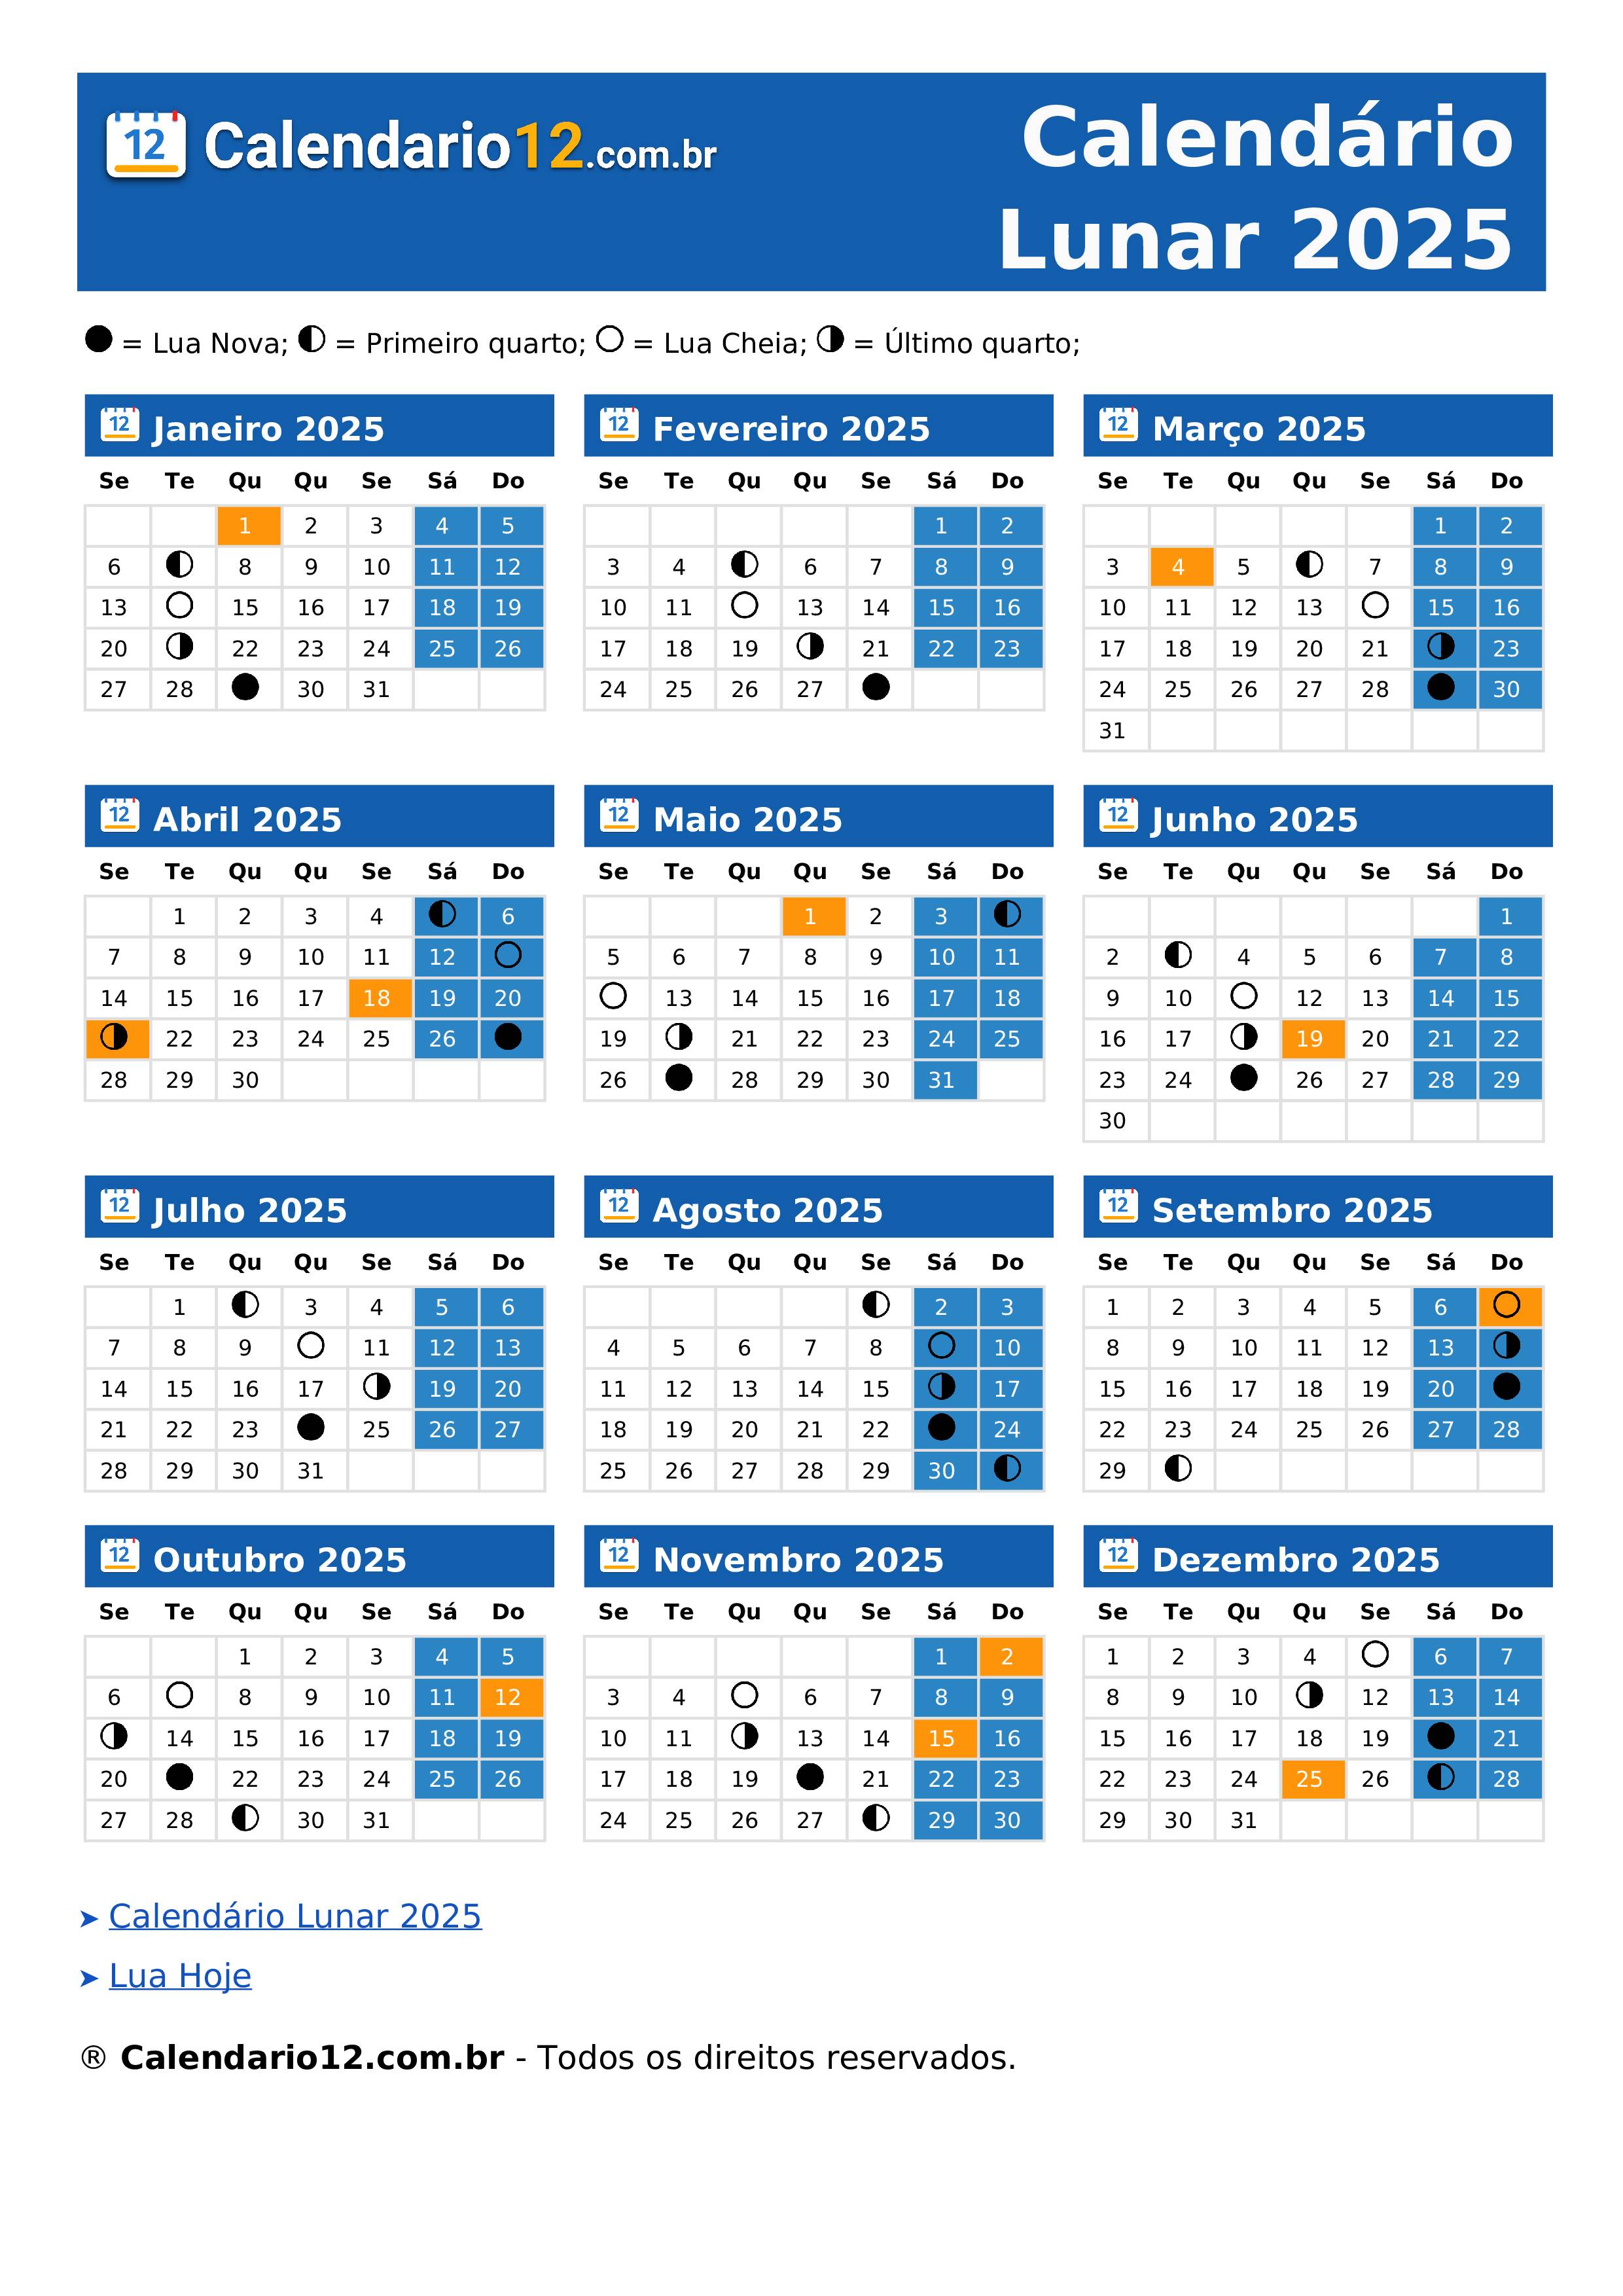 Calendário Lunar Setembro 2025 ⬅️ — Calendario12.com.br